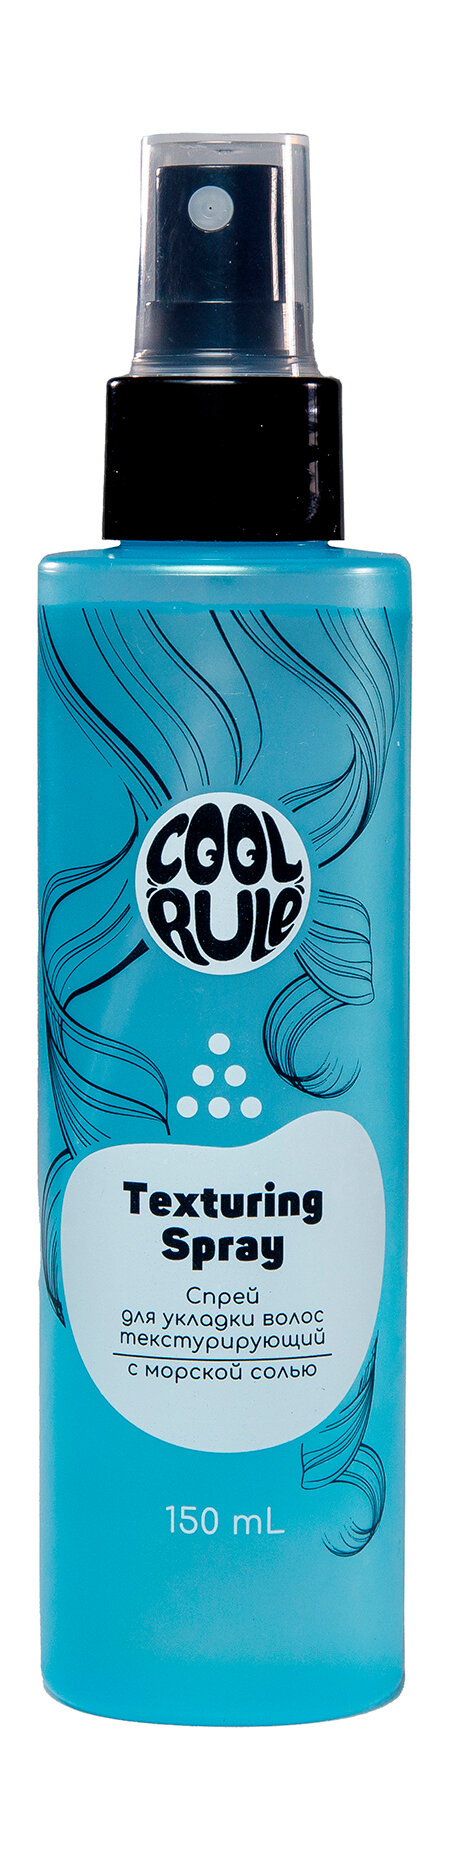 COOL RULE Спрей для укладки волос текстурирующий с морской солью, 150 мл